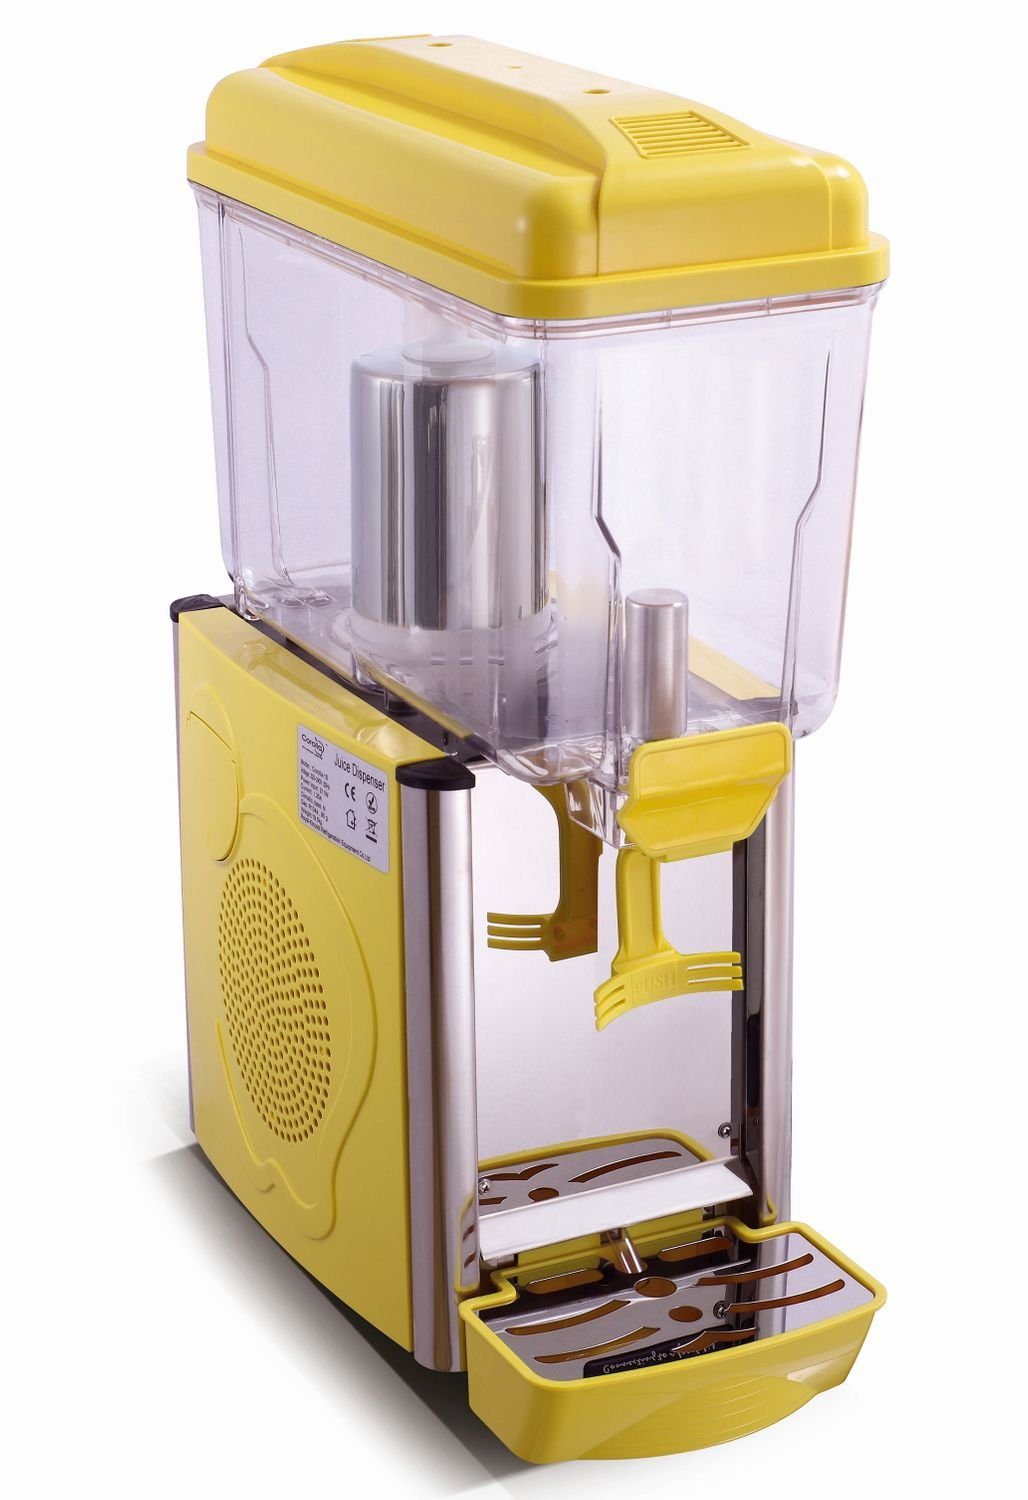 Saftspender, Dispenser, mit gelb Kühlung, Getränkespender Saro Einkochautomat 1G Kaltgetränke